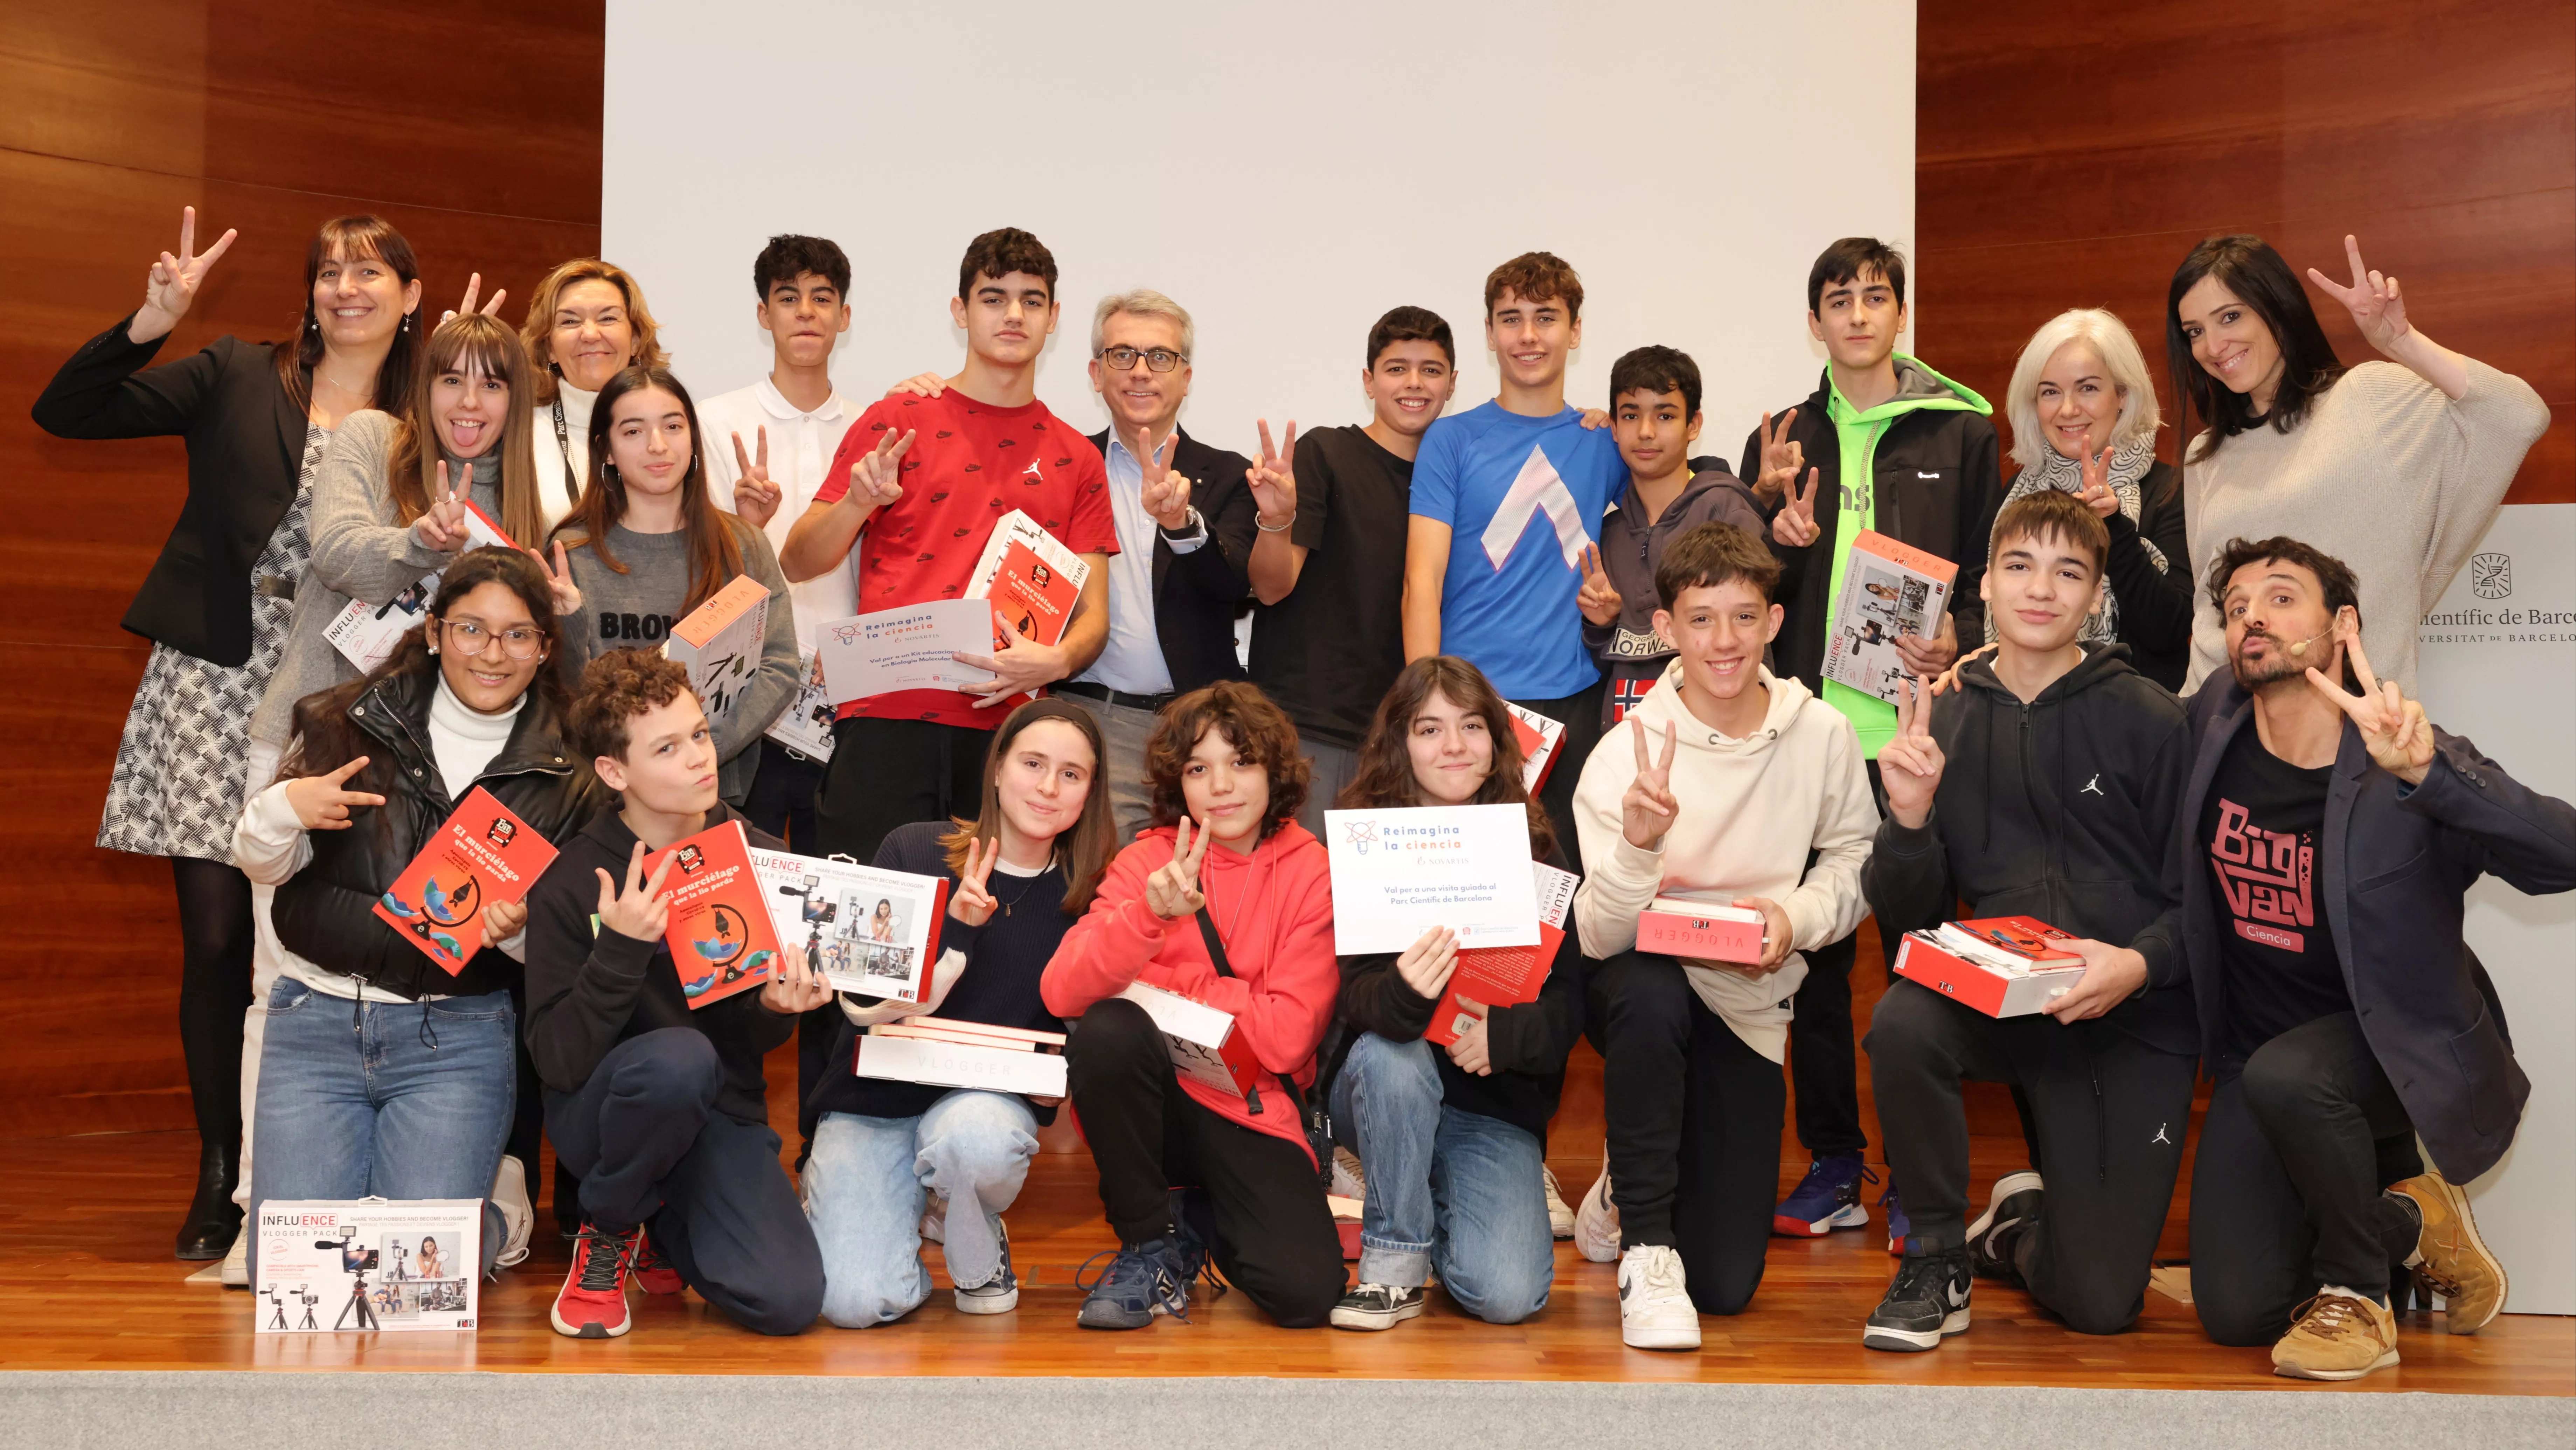 En la imagen, los ganadores de la IV edición del Reimagina la Ciencia en Cataluña acompañados, entre otros, de Jesús Ponce, presidente de Novartis España, y Maria Terrades, directora del Parc Científic de Barcelona.